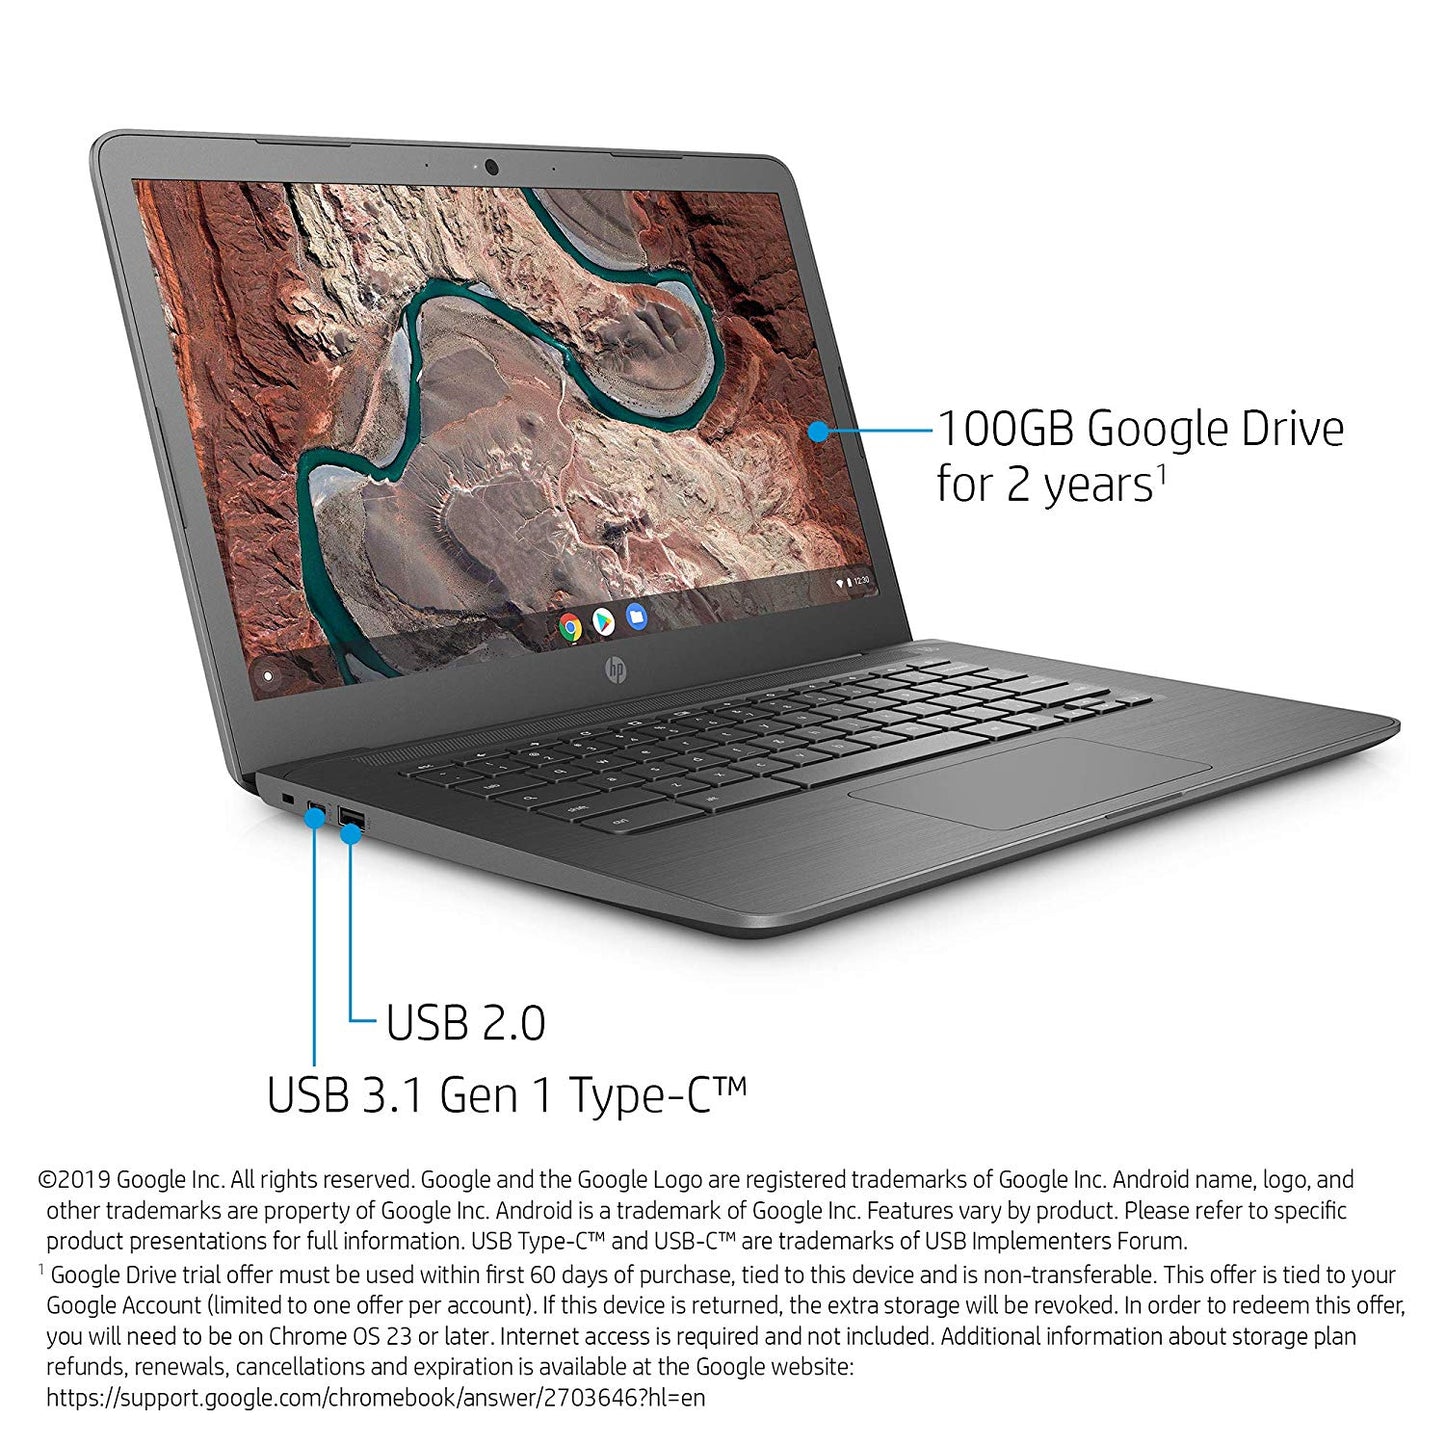 HP Chromebook 14-in 4 GB, 32 GB eMMC Storage, Chrome OS 14-db0020nr - Chalkboard Gray